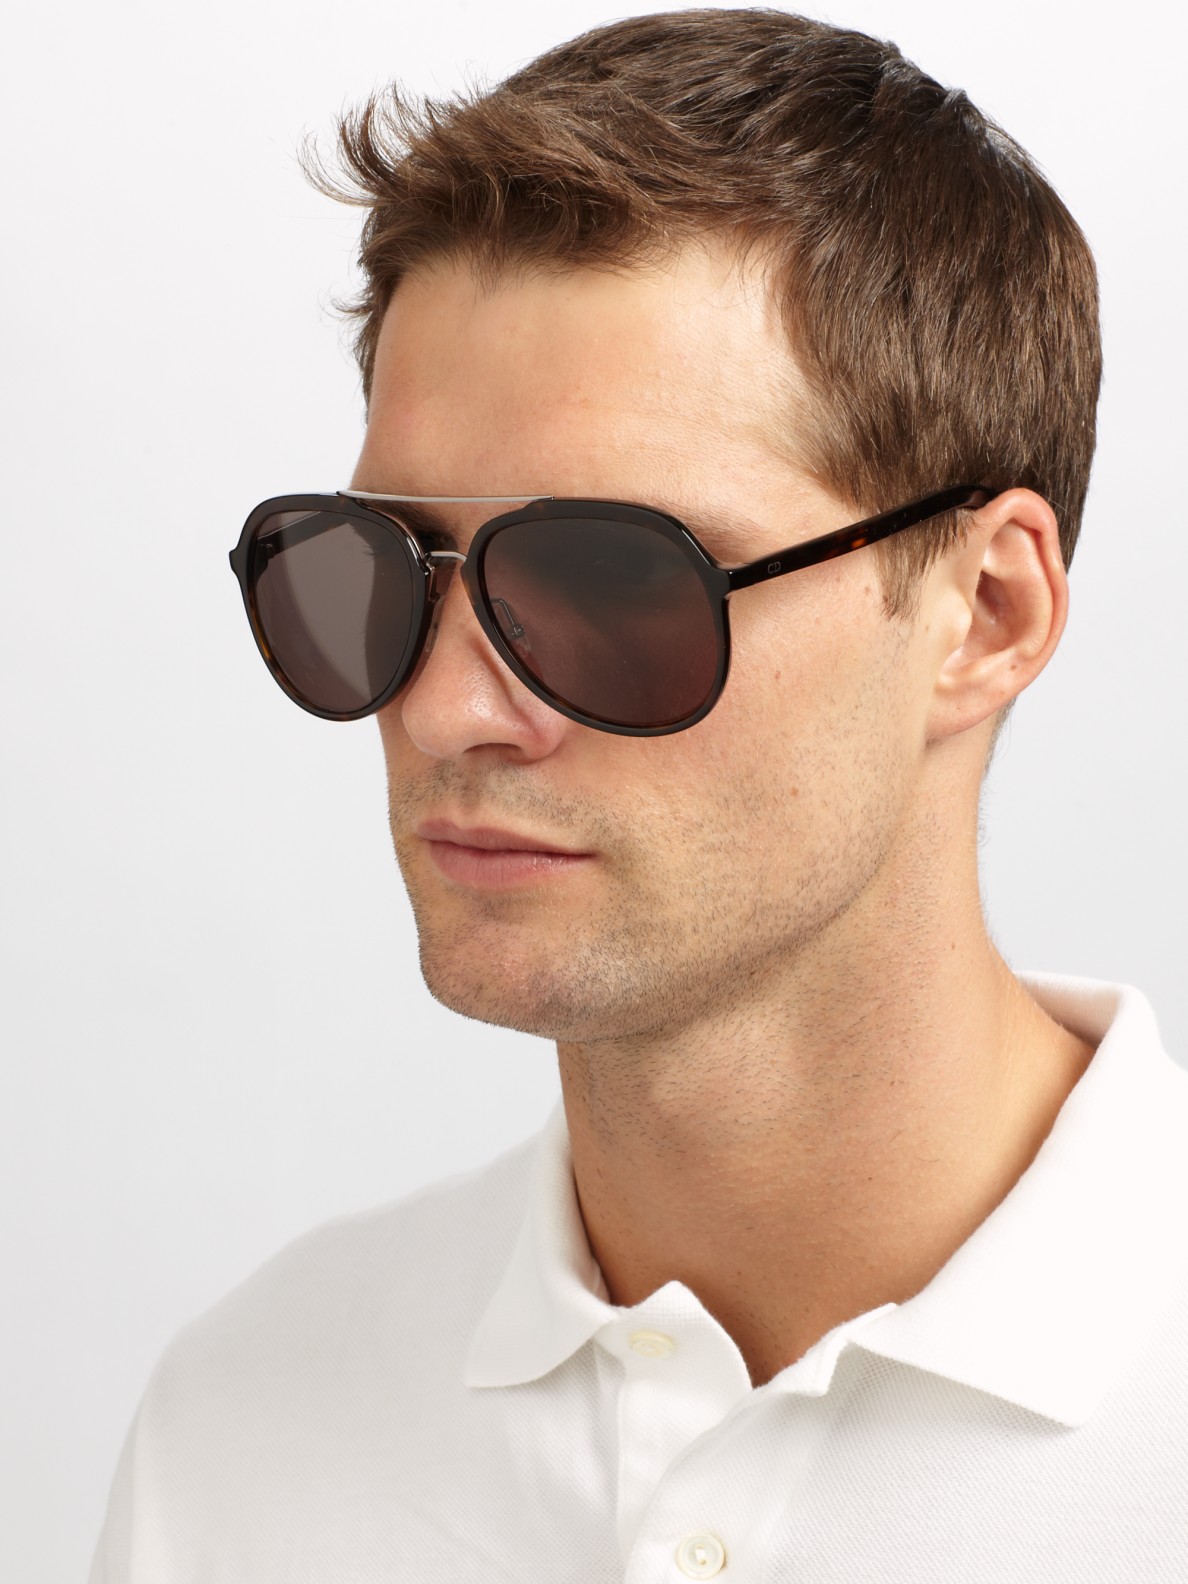 Стильные мужские очки солнцезащитные. Очки Kappa Авиаторы. Dior Sunglasses men. Dior homme очки мужские солнцезащитные. Dior homme Blacktie 177s очки.